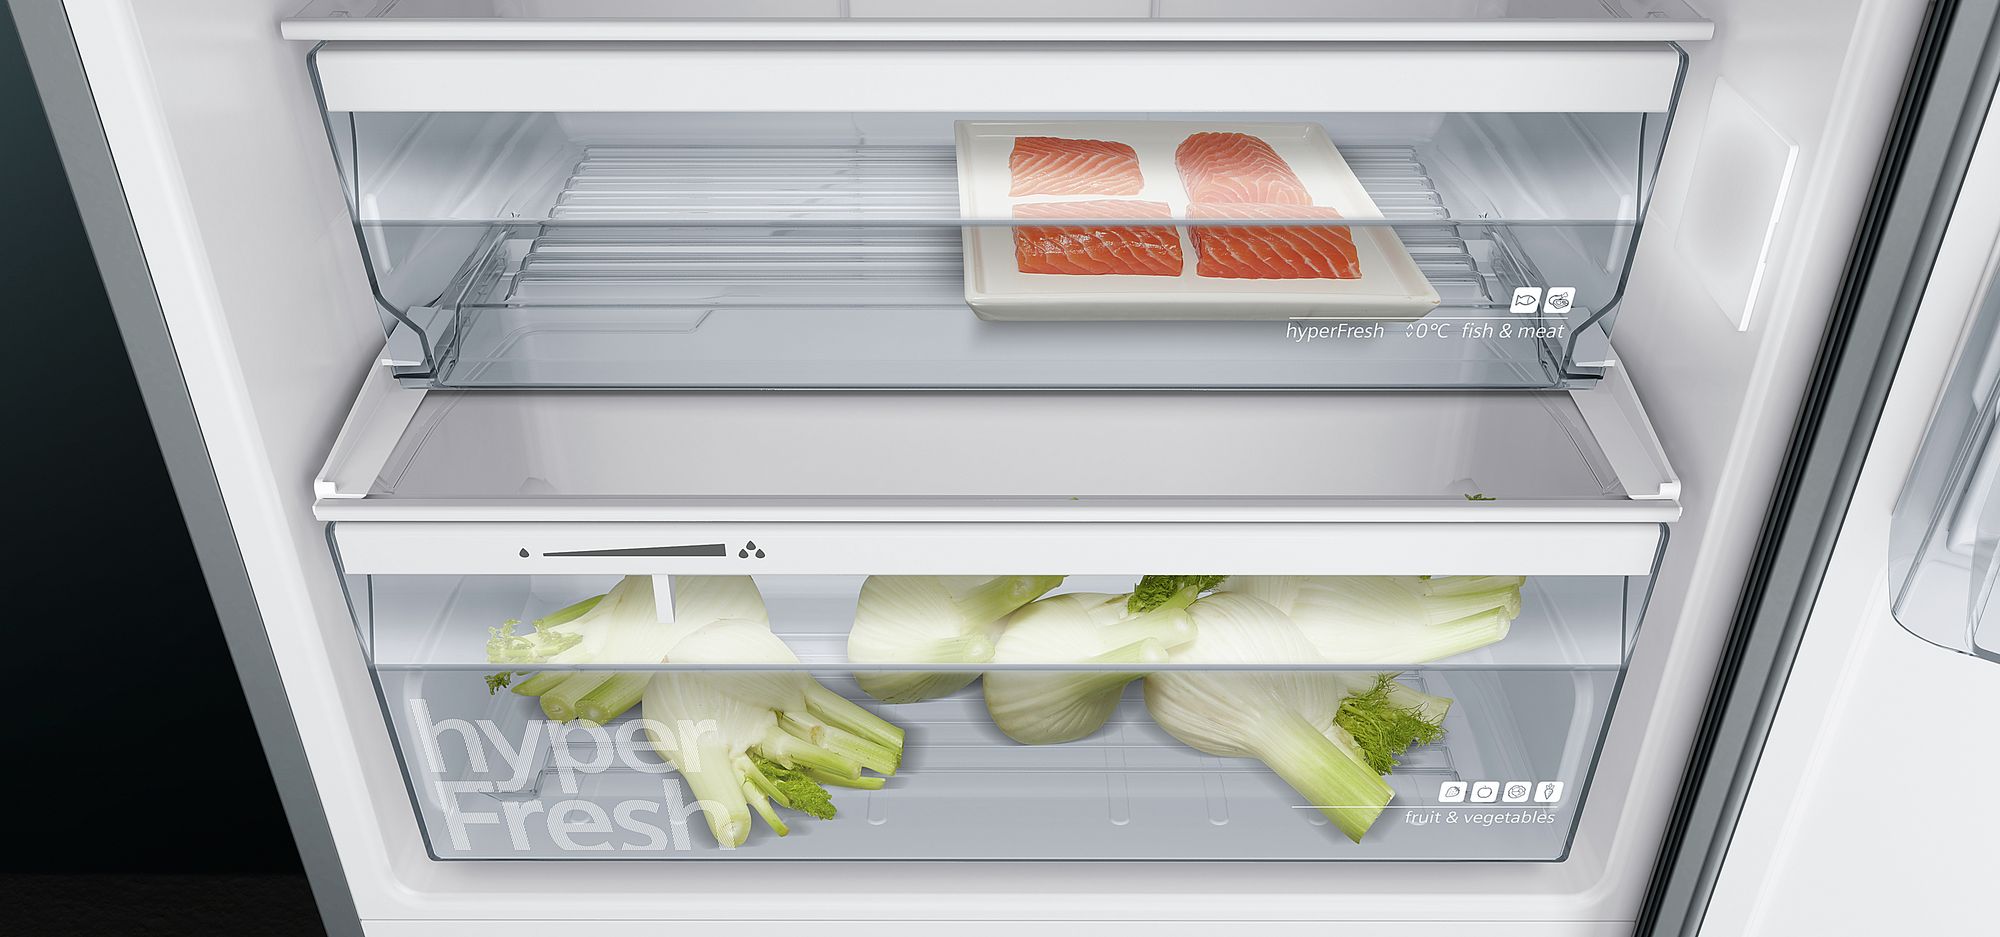 iQ300 Üstten Donduruculu Buzdolabı 186 x 70 cm Kolay temizlenebilir Inox